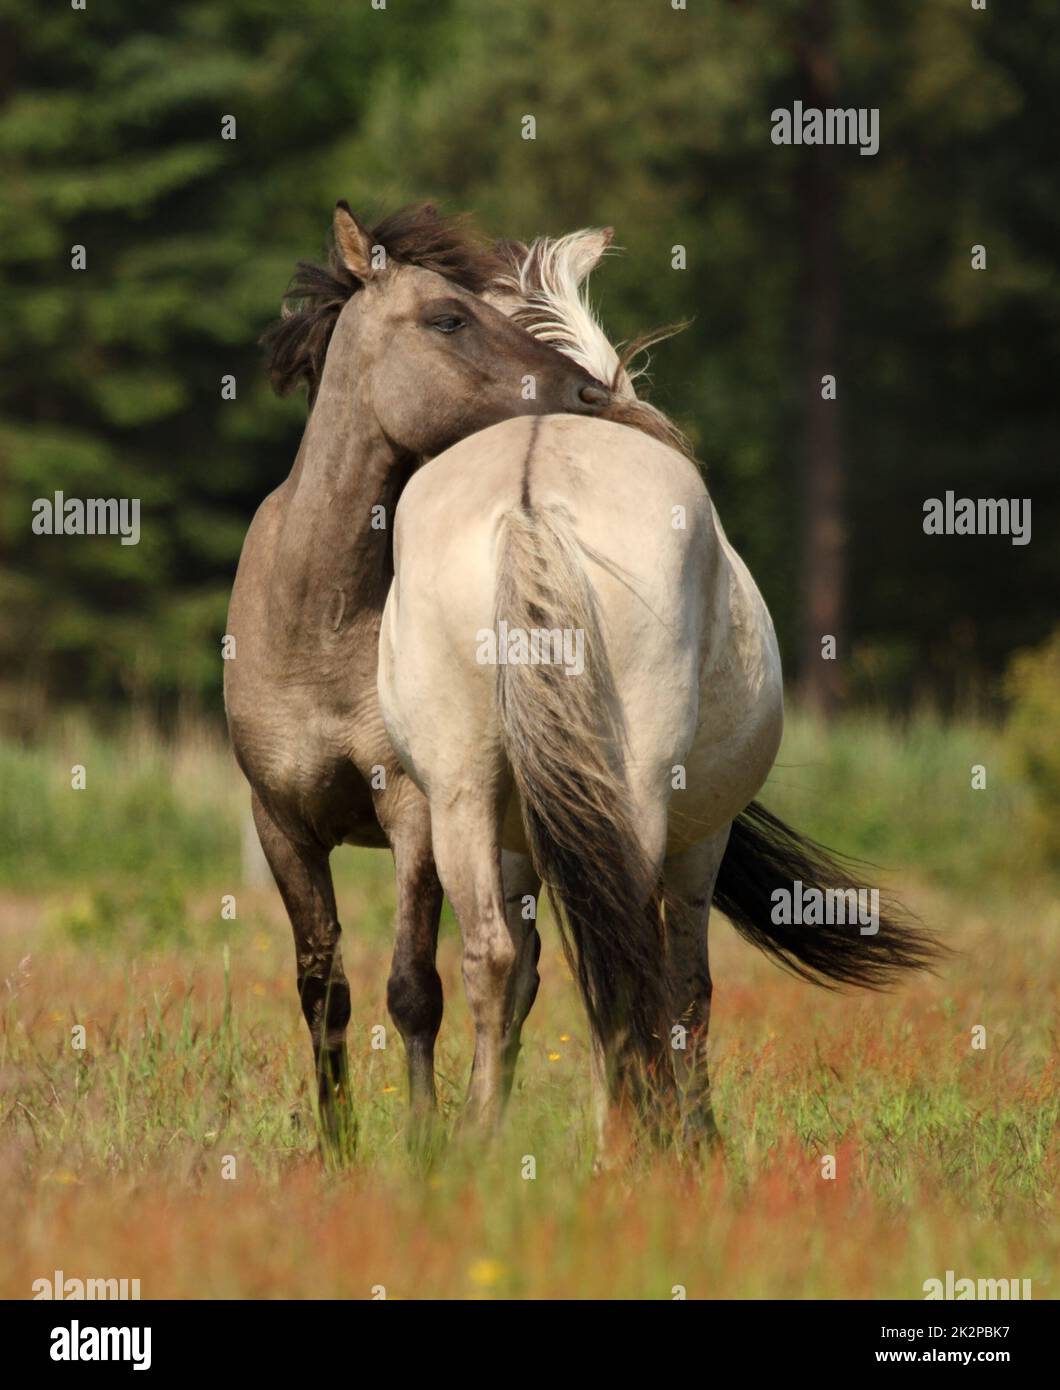 Un portrait de deux chevaux sauvages - Equus ferus - dans la réserve Marielyst, Danemark Banque D'Images